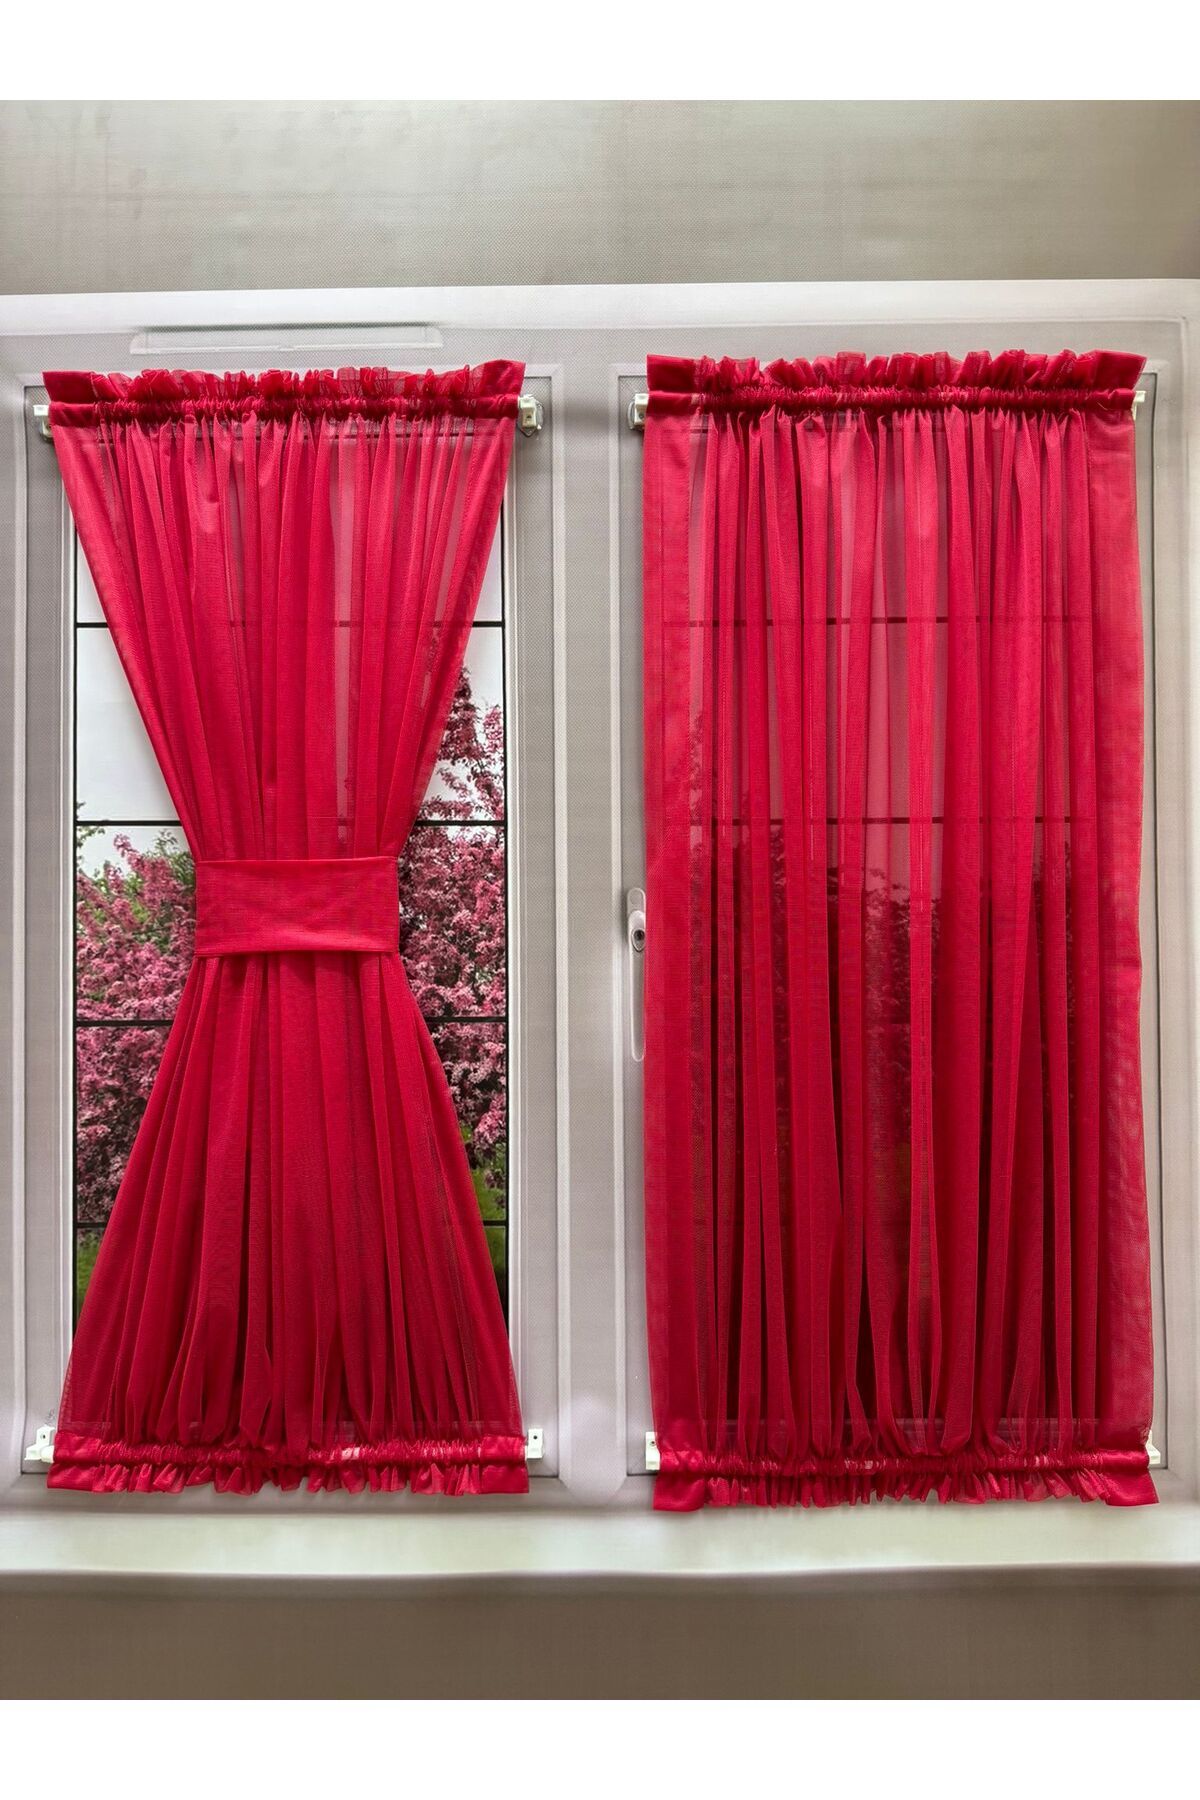 perdealemi Kırmızı Kelebek Briz Çubuklu Perde, Mutfak Kapı Pencere içi Tül Perde ( Çubuklar Dahil )